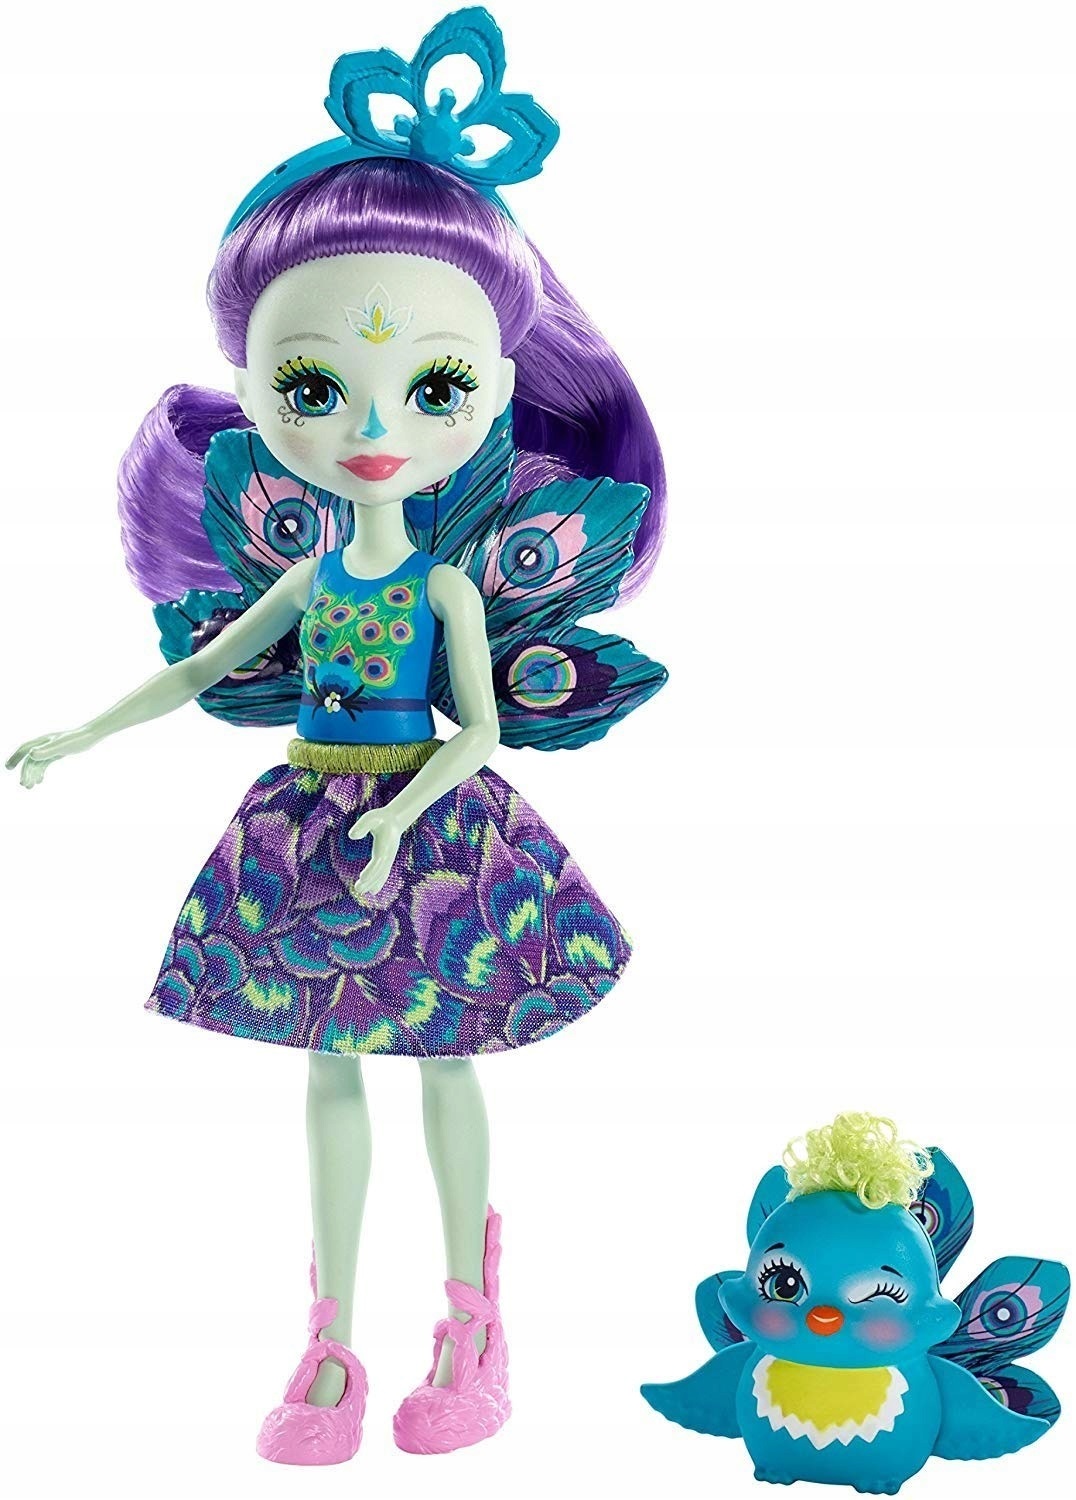 Кукла Пэттер Павлина с питомцем павлином Флэп 15см Enchantimals Mattel FXM74 - фото